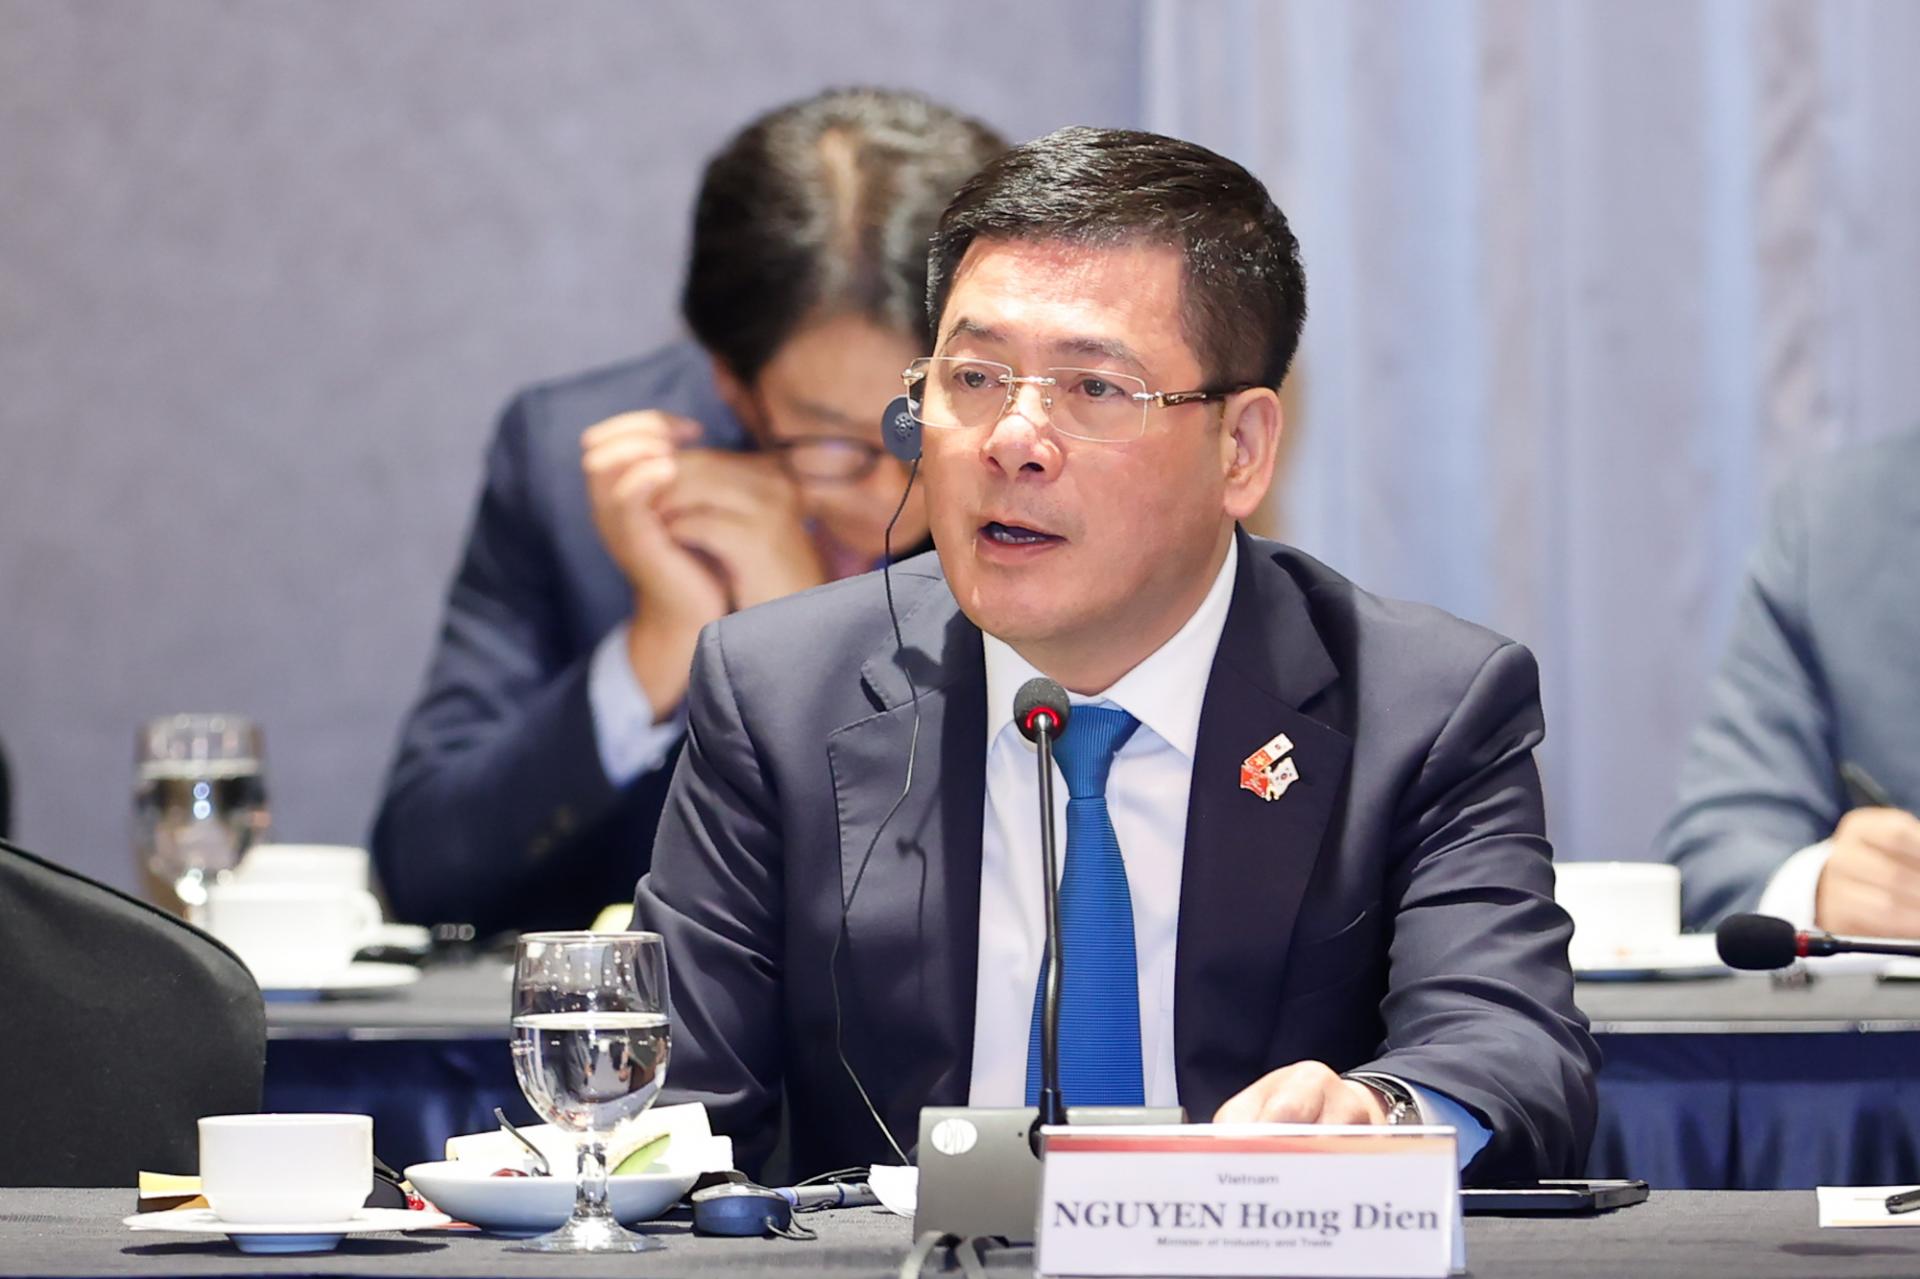 Trả lời các vấn đề về năng lượng, Bộ trưởng Bộ Công Thương Nguyễn Hồng Diên nhấn mạnh Việt Nam có nhu cầu lớn về năng lượng và đang thu hút đầu tư vào lĩnh vực này.